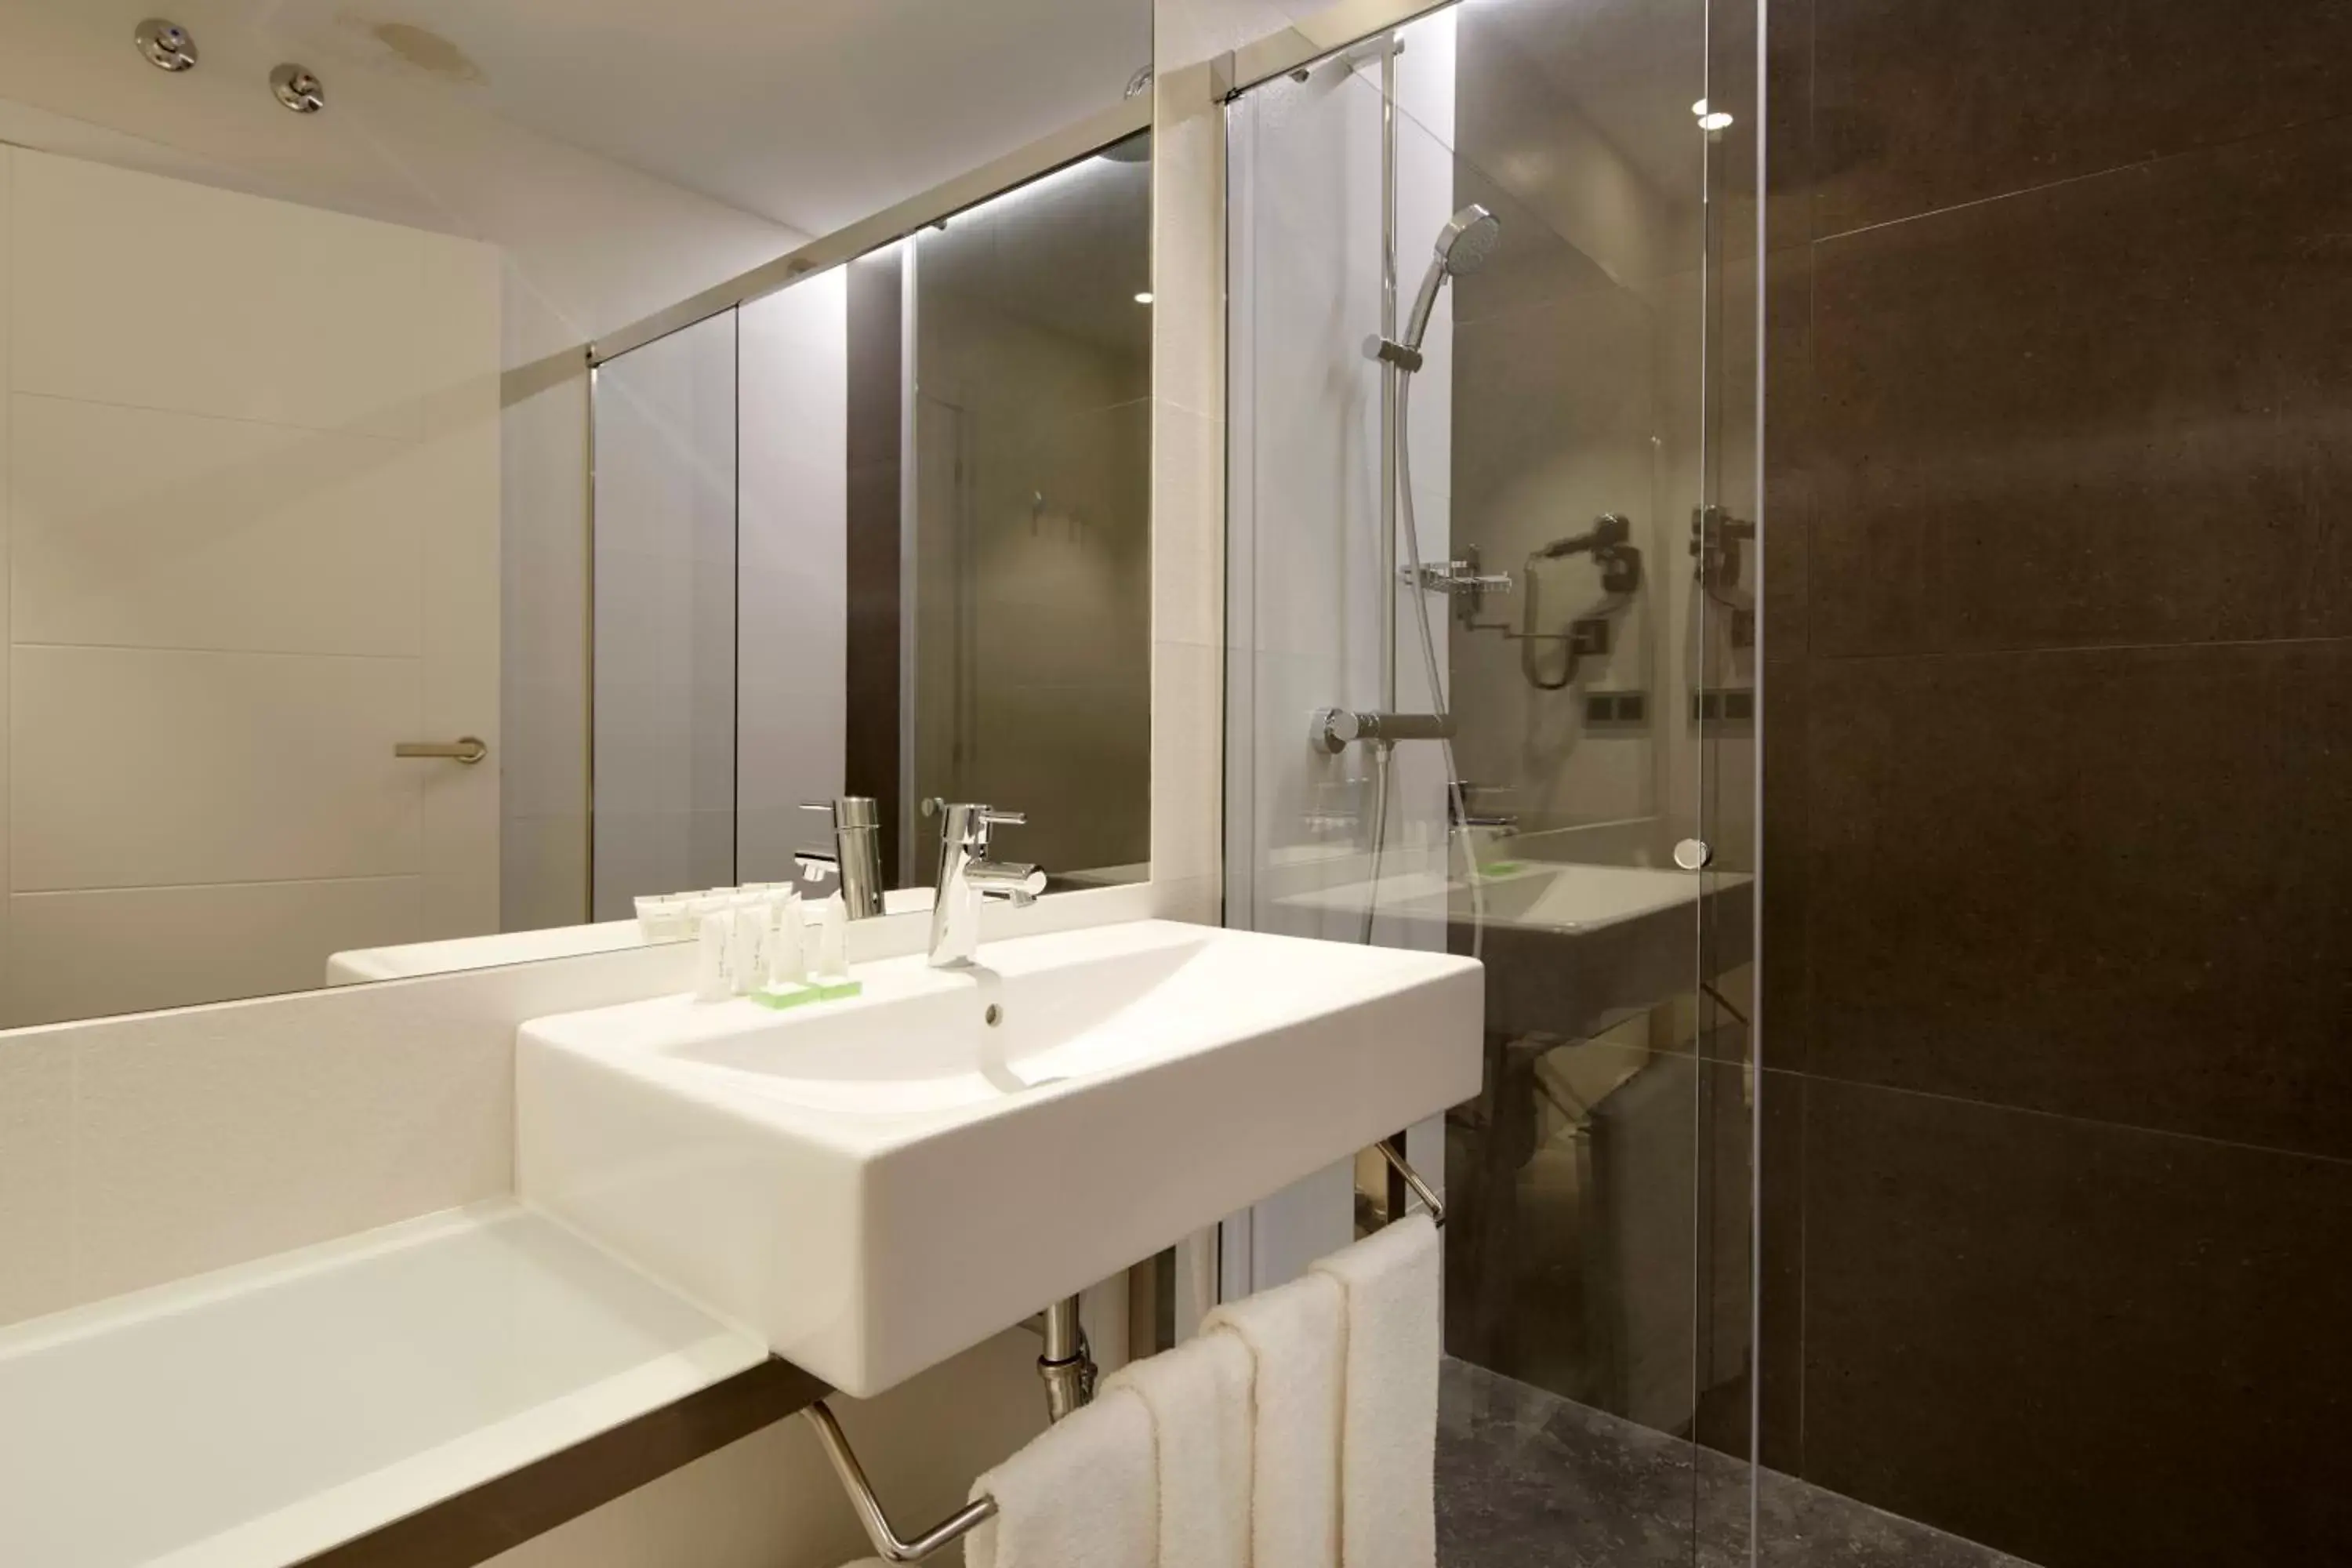 Bedroom, Bathroom in Hotel Arrizul Congress